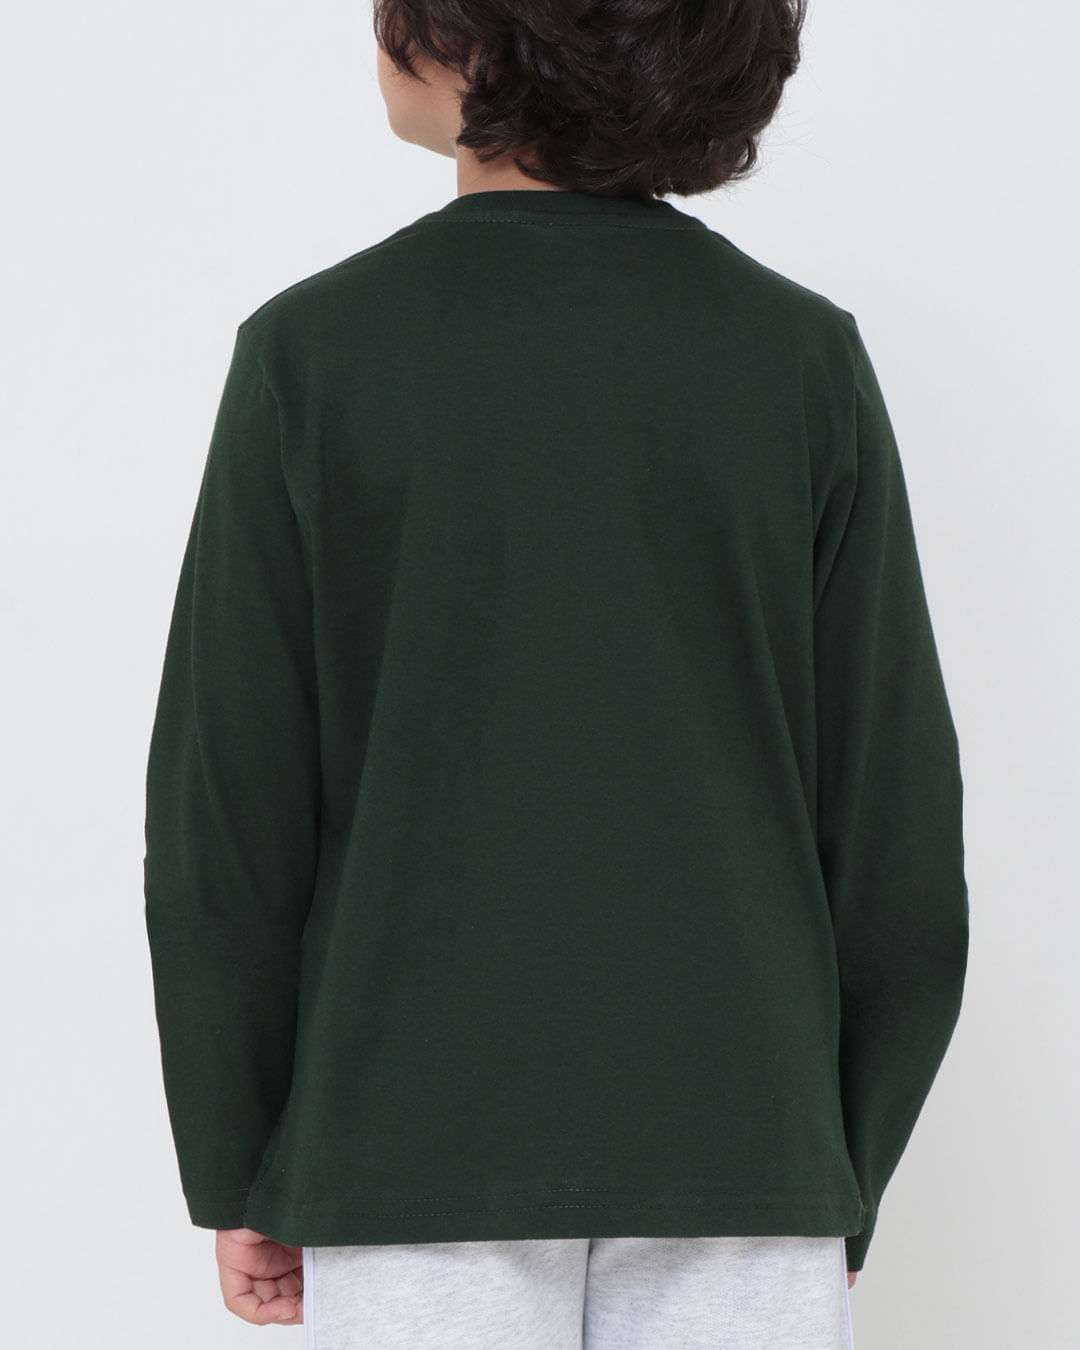 Camiseta-T2012-Ml-M48-Street---Verde-Escuro